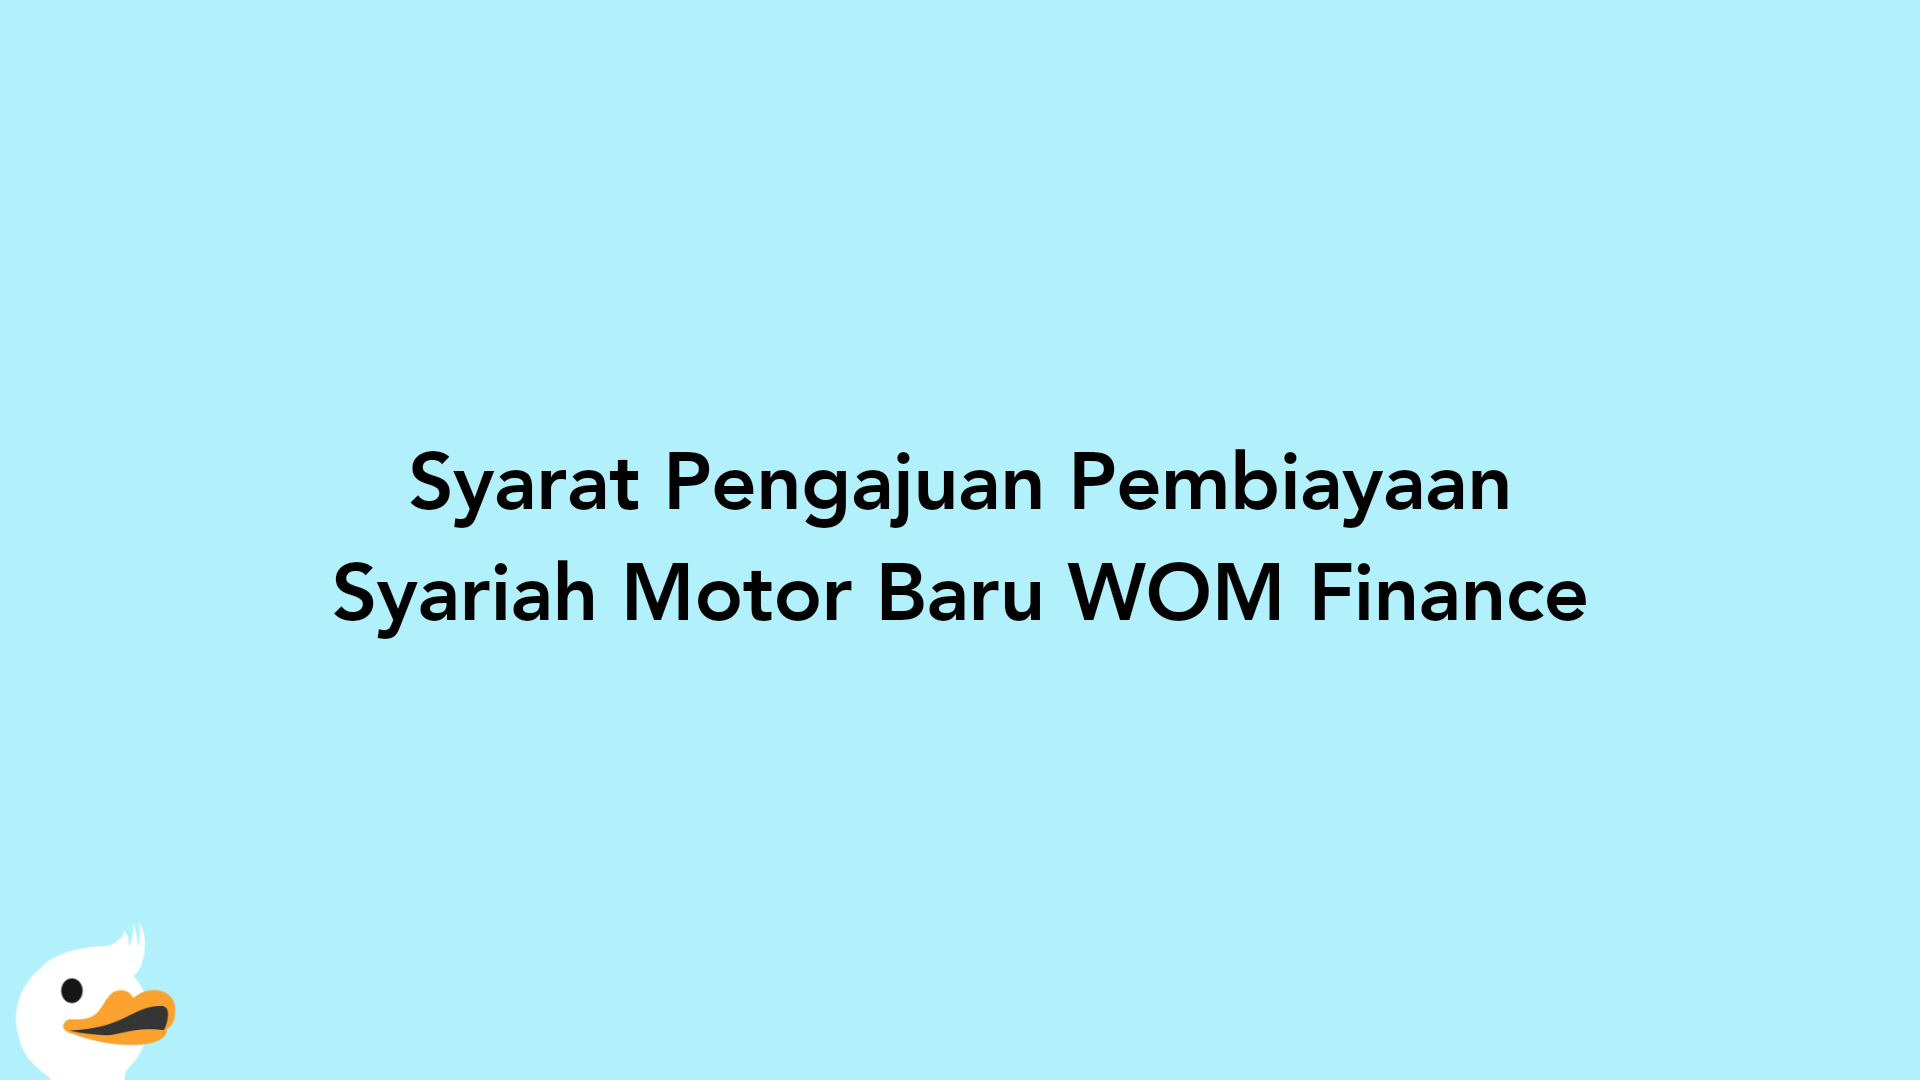 Syarat Pengajuan Pembiayaan Syariah Motor Baru WOM Finance